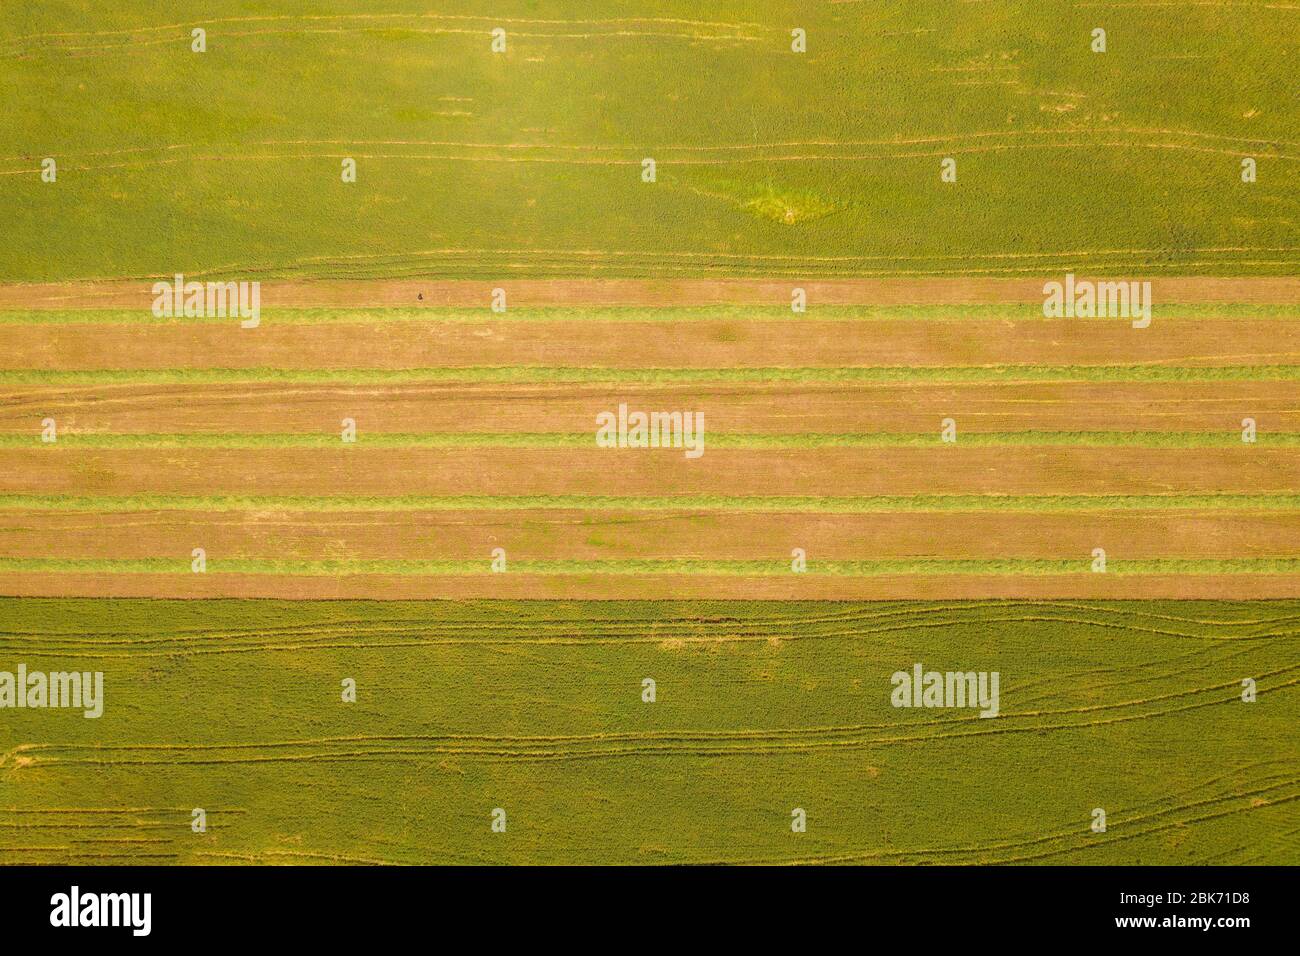 Campo agricolo con file di insilato raccolto, immagine aerea. Foto Stock